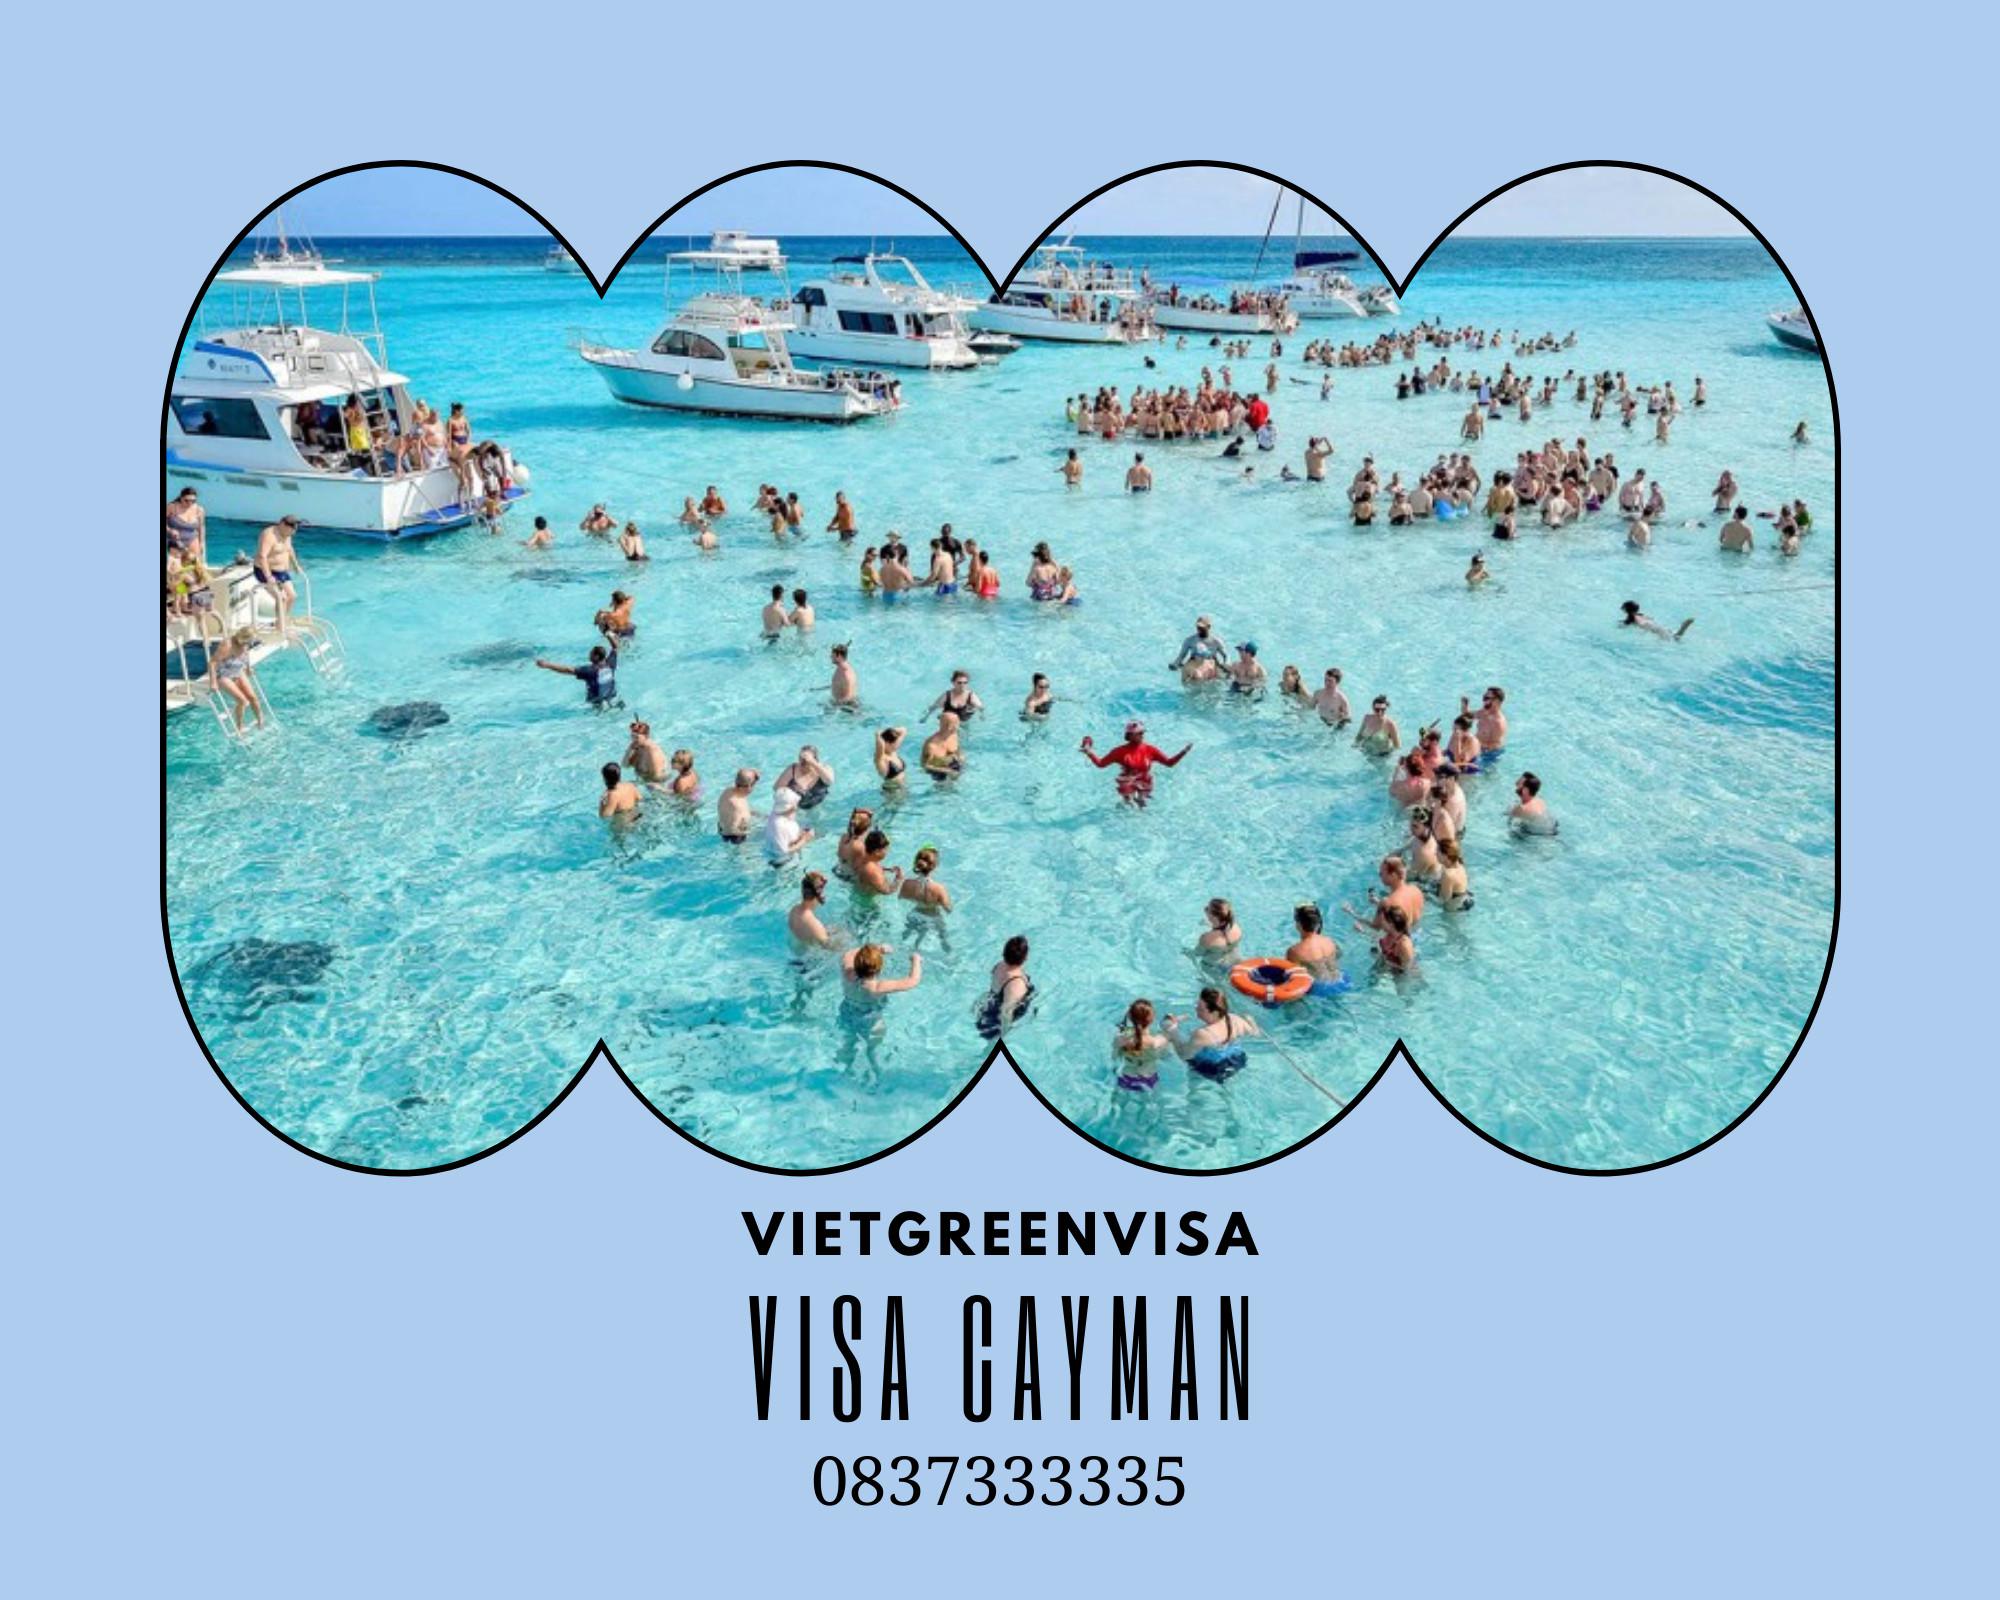 Dịch vụ Visa đảo Cayman du lịch uy tín, trọn gói